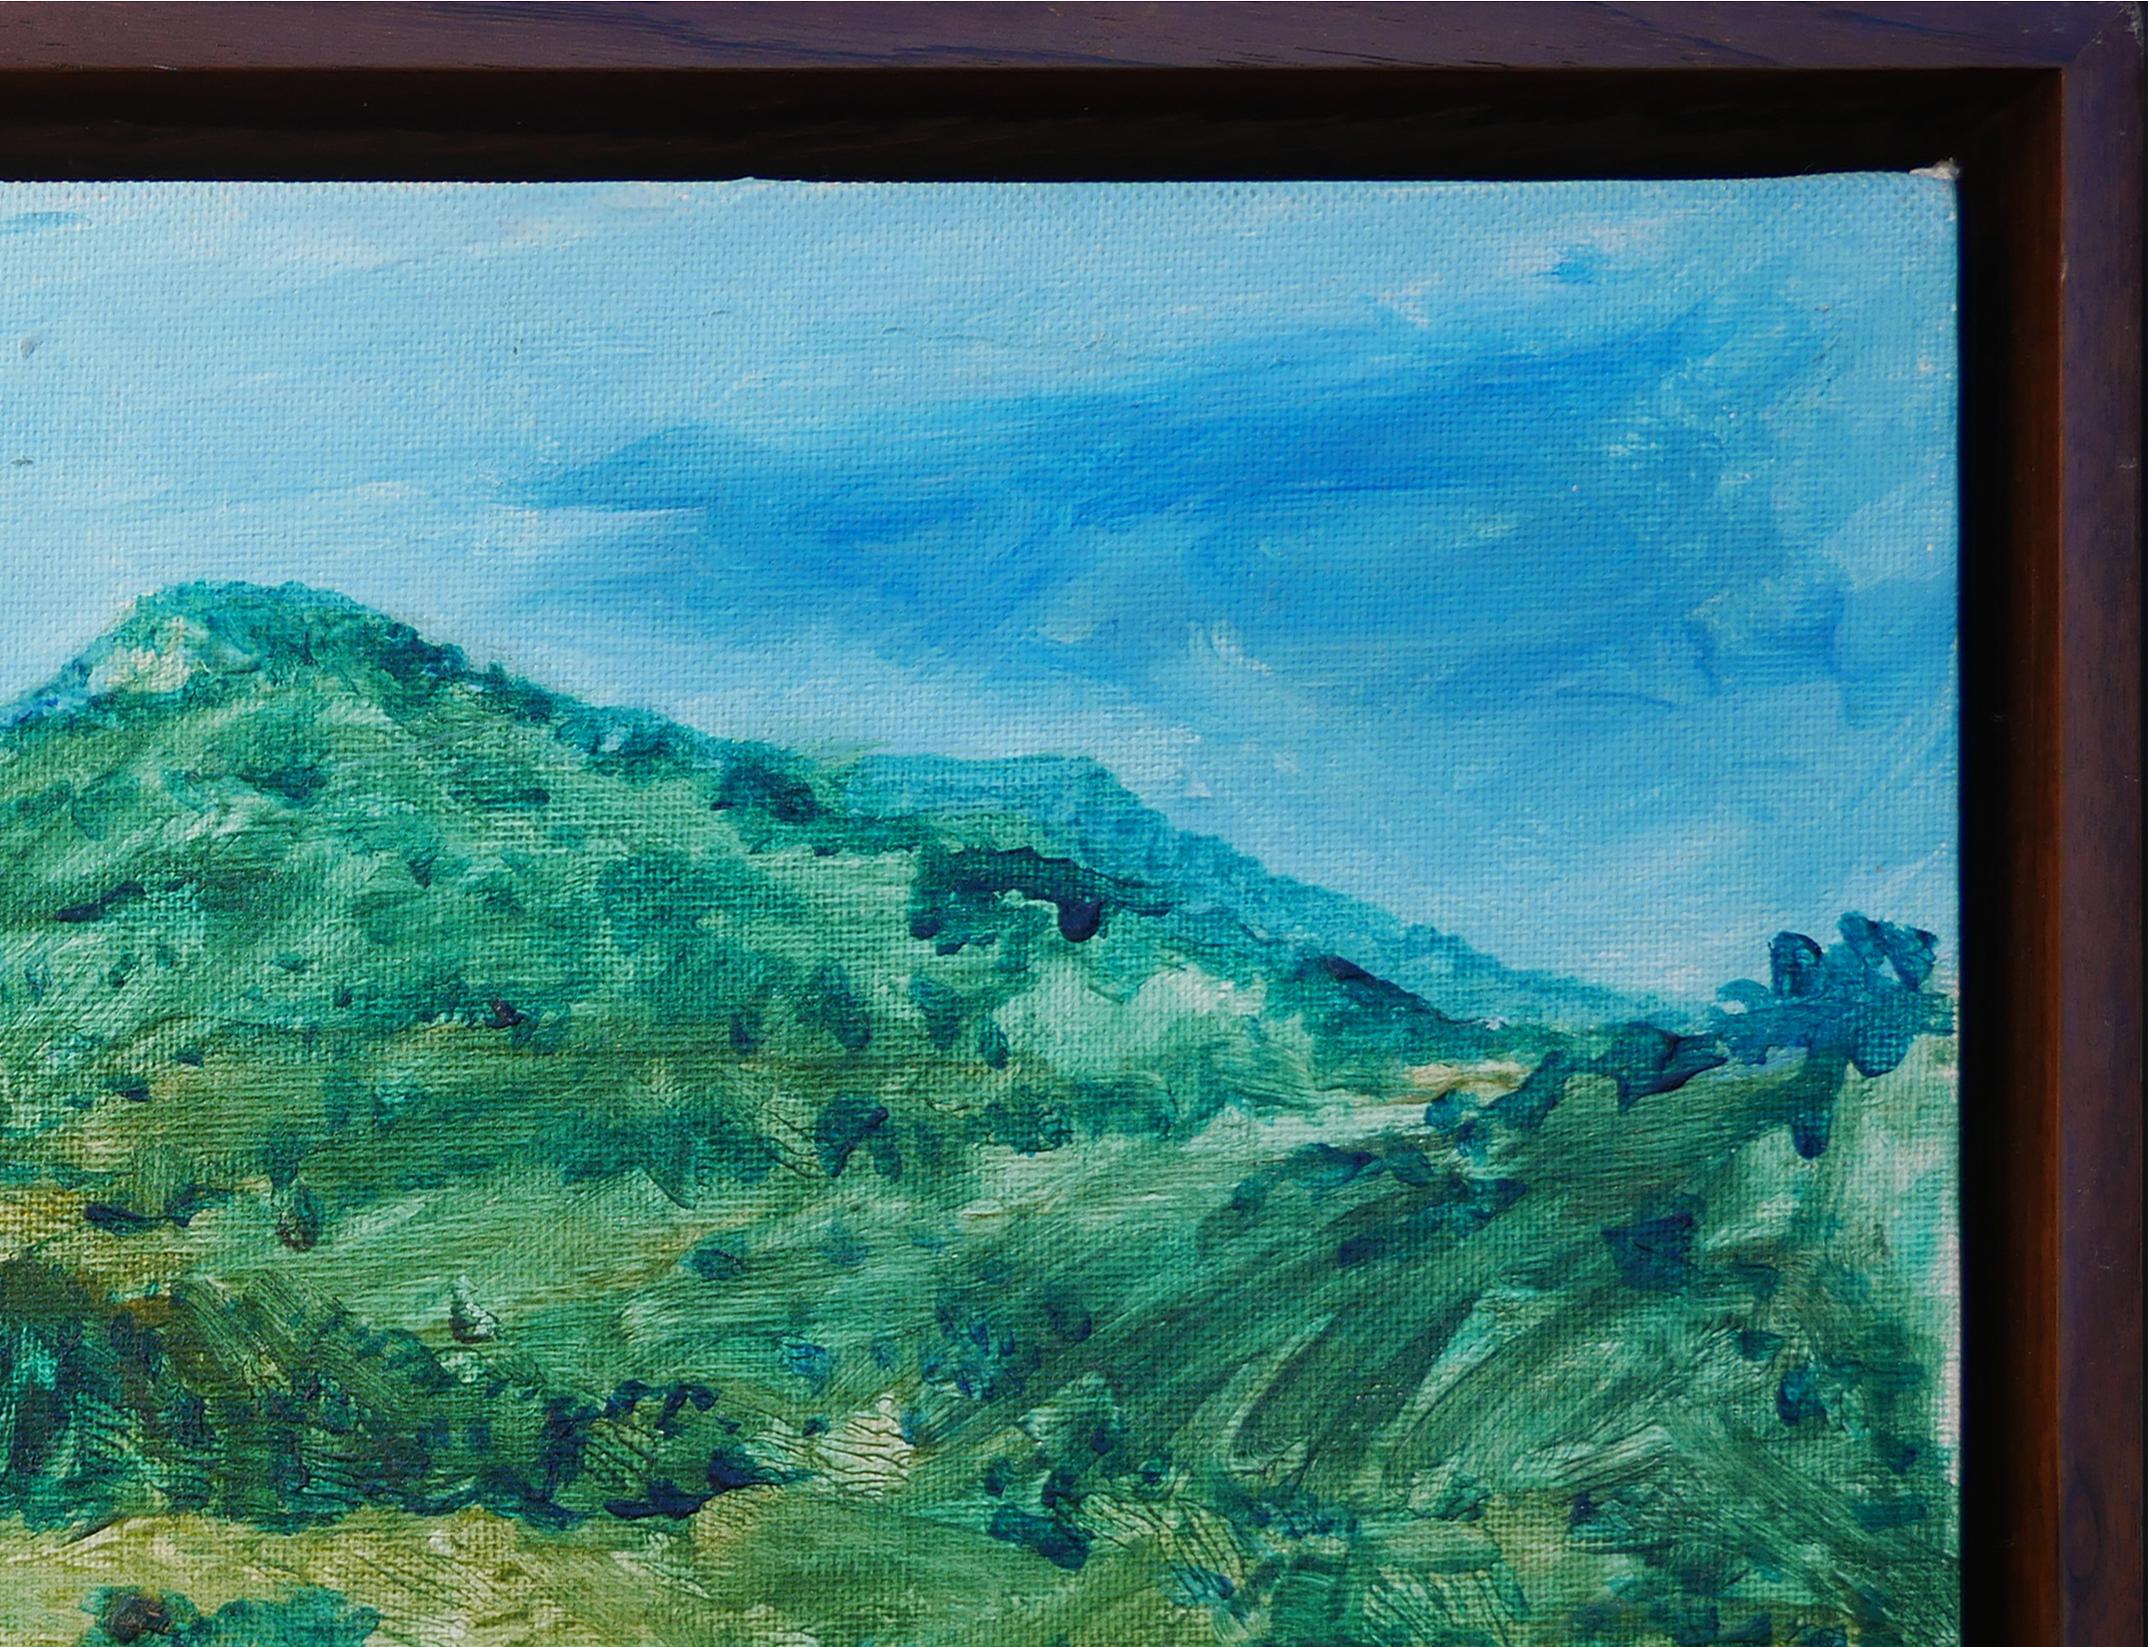 Grün und blau getönte Landschaftsmalerei des Künstlers Earl Staley aus Houston, TX. Dieses Gemälde zeigt einen dichten, grünen Wald mit einem Berg in der Mitte im Hintergrund. Signiert und datiert in der rechten unteren Ecke. Derzeit in einem dünnen